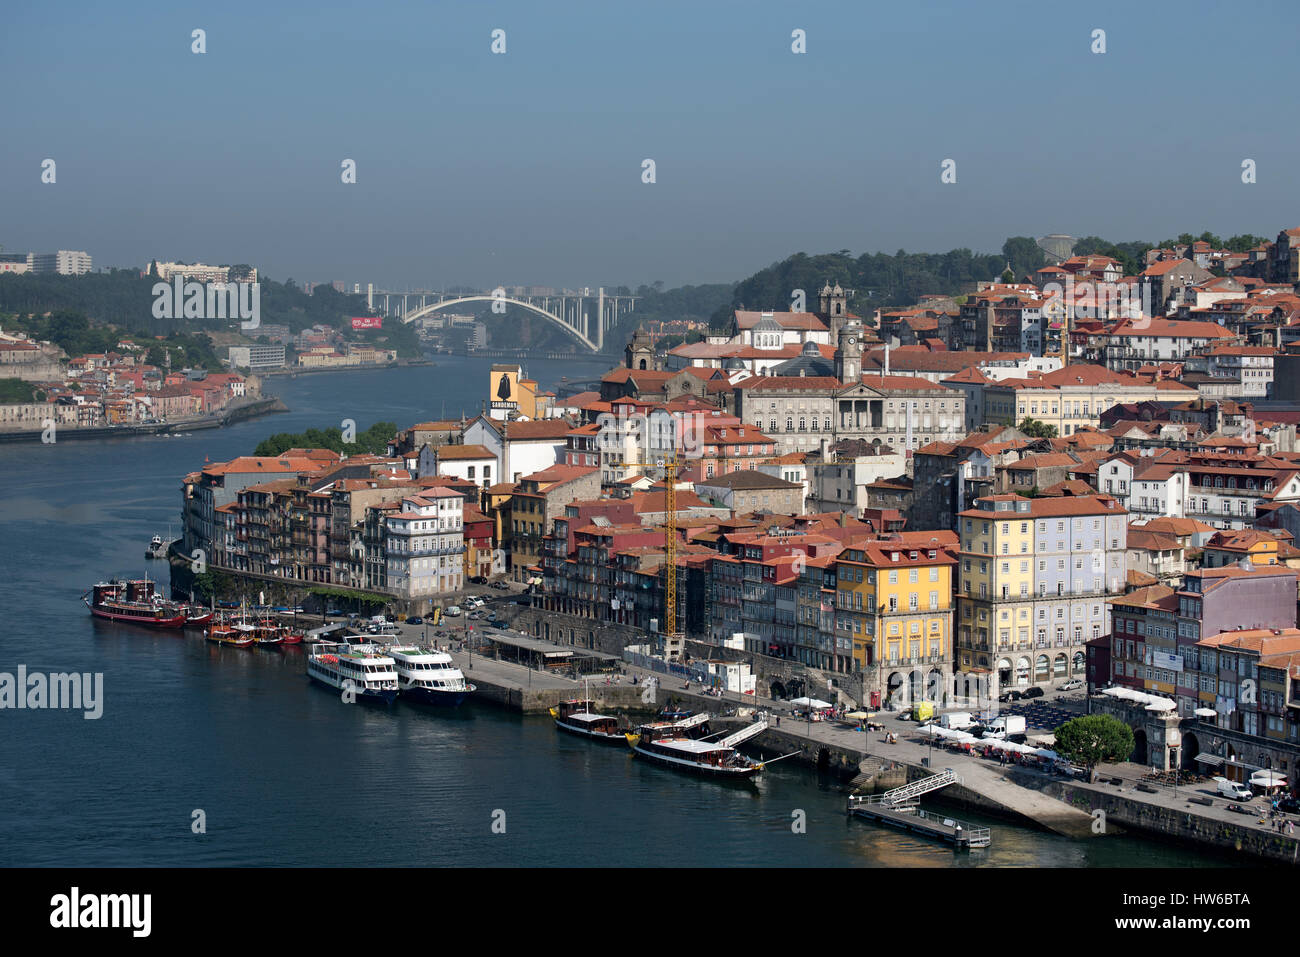 Aerial view of Douro River, Porto Portugal Stock Photo